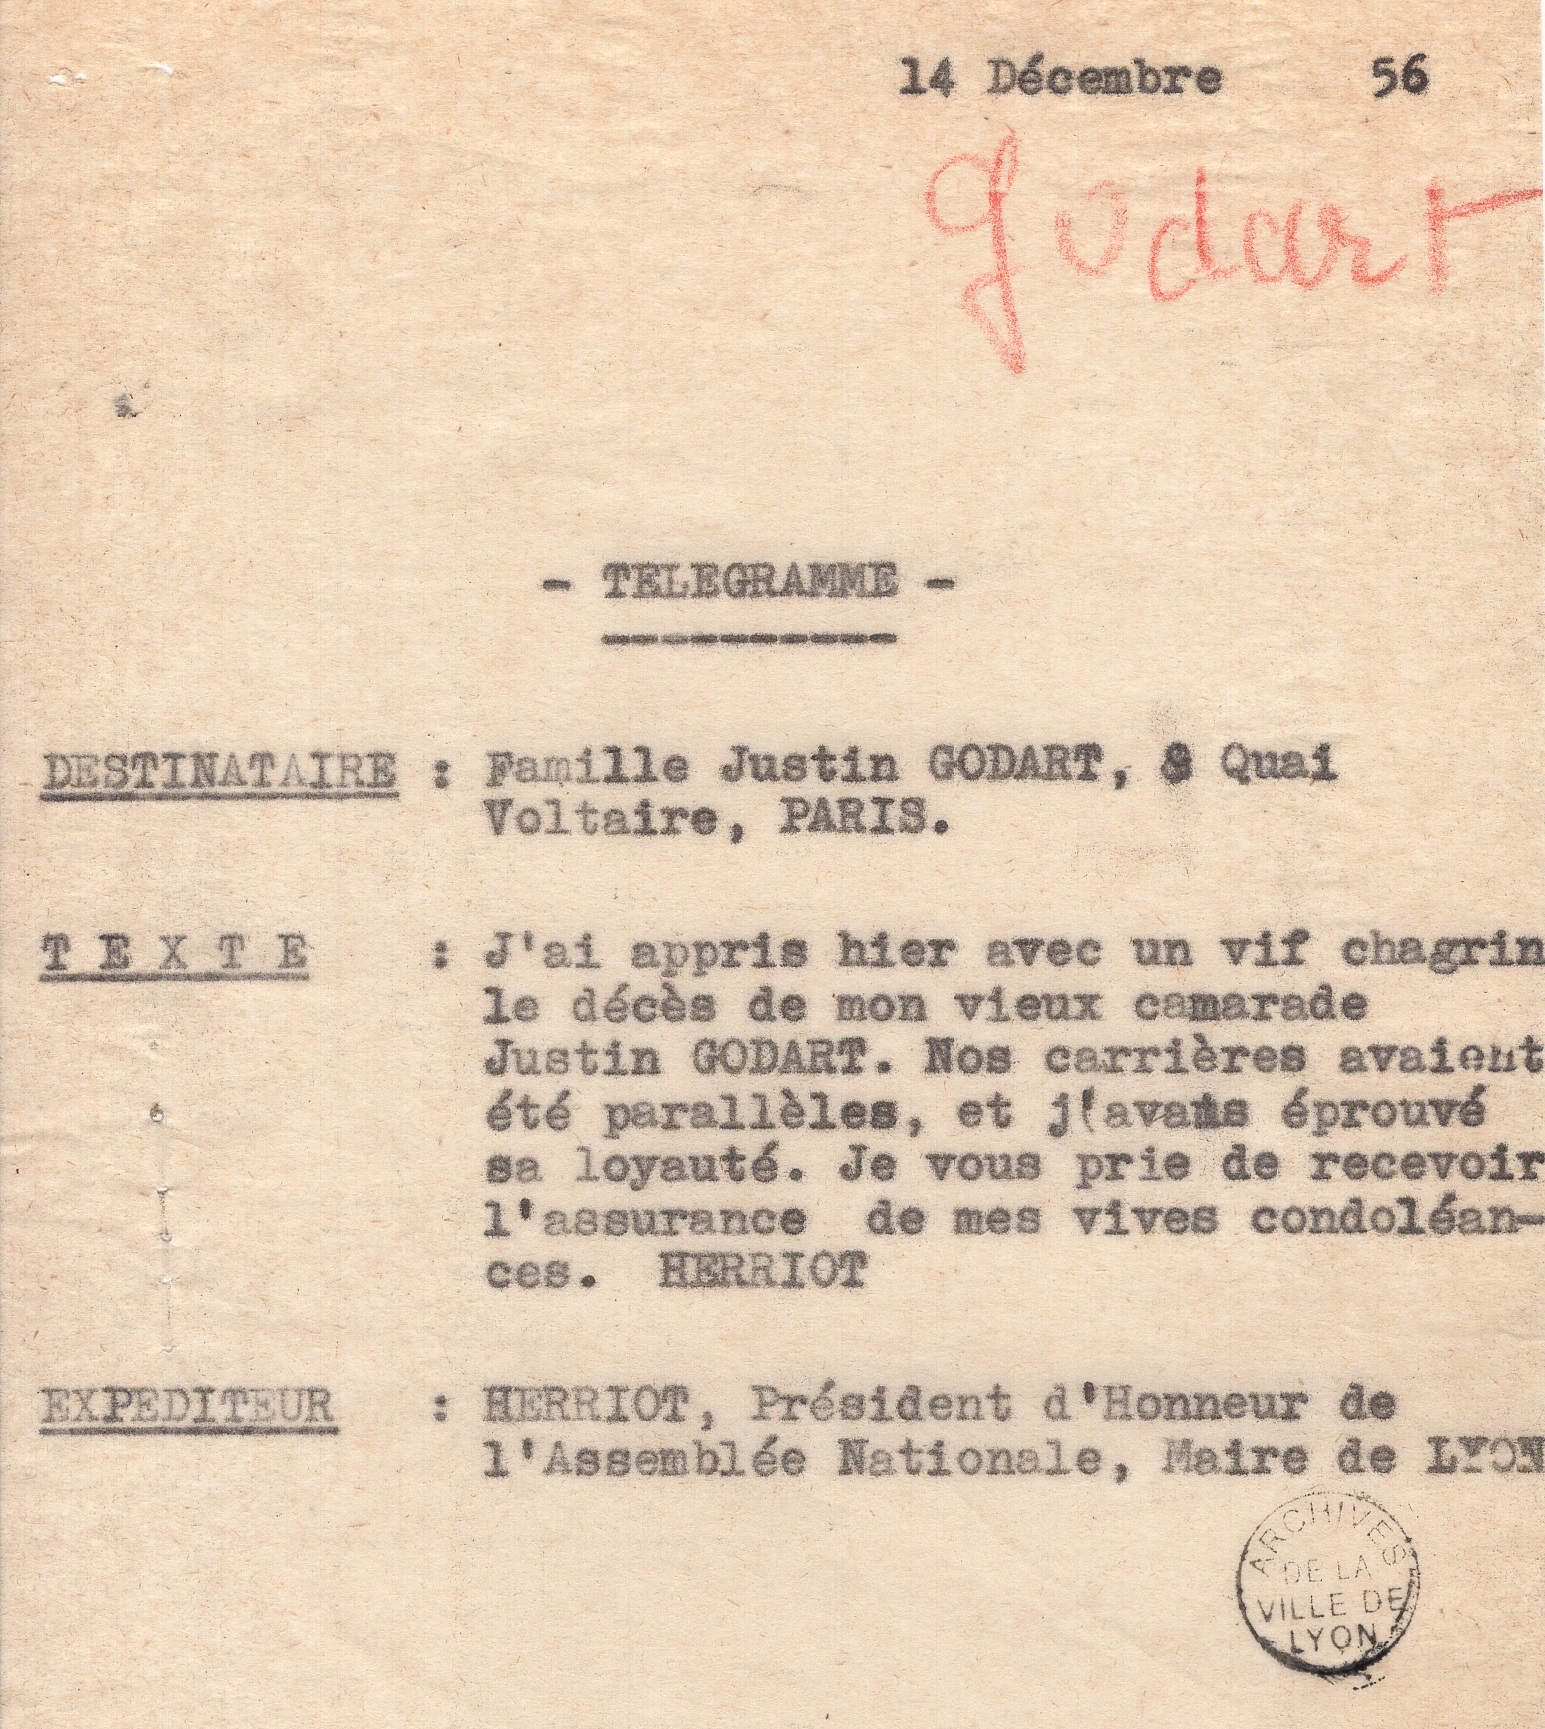 Copie carbone du télégramme envoyé par Edouard Herriot, 14 décembre 1956 (639WP/143)